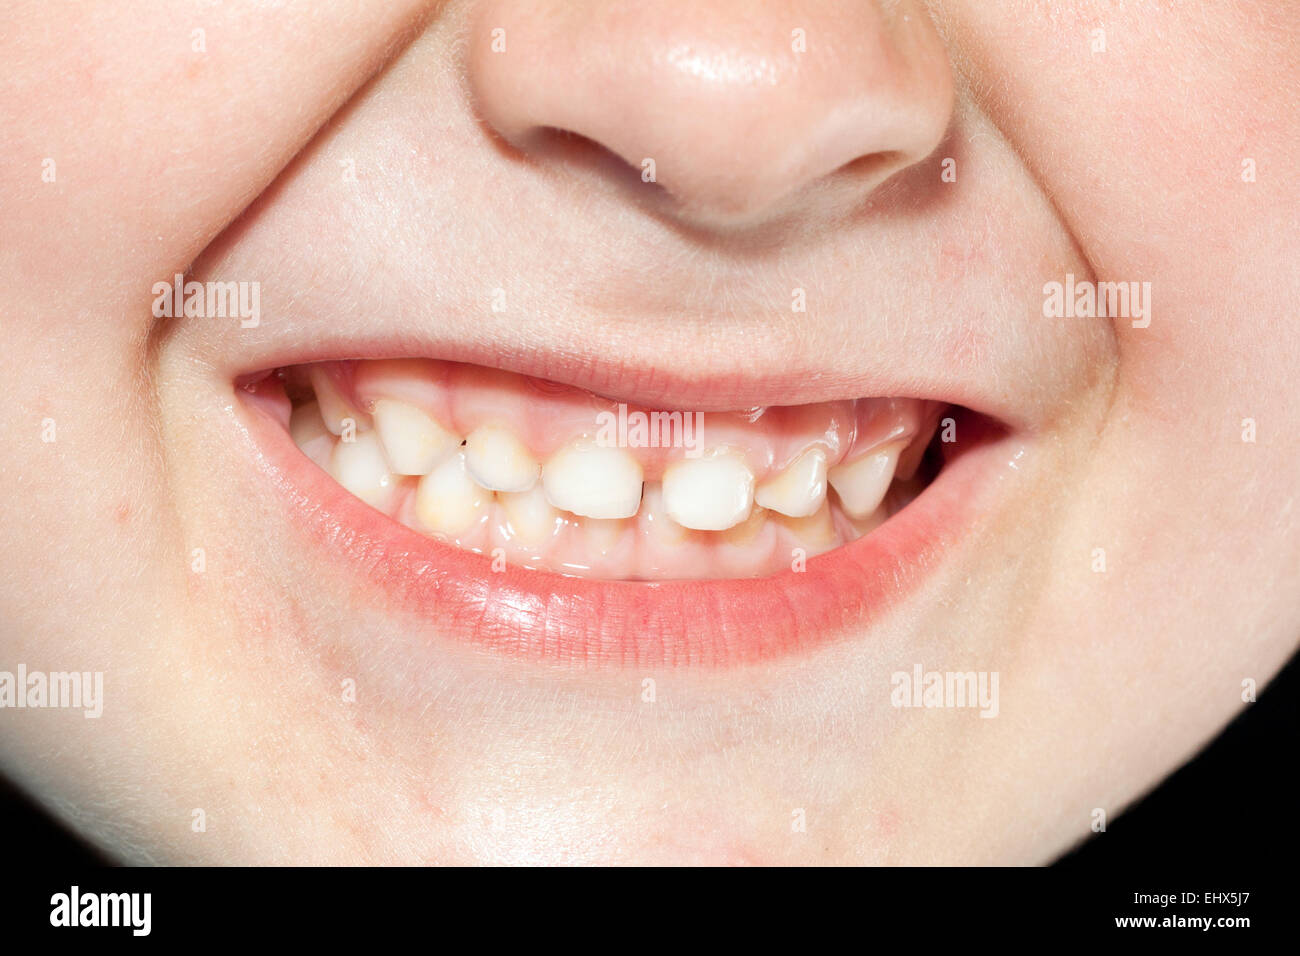 Les dents des enfants close up Banque D'Images